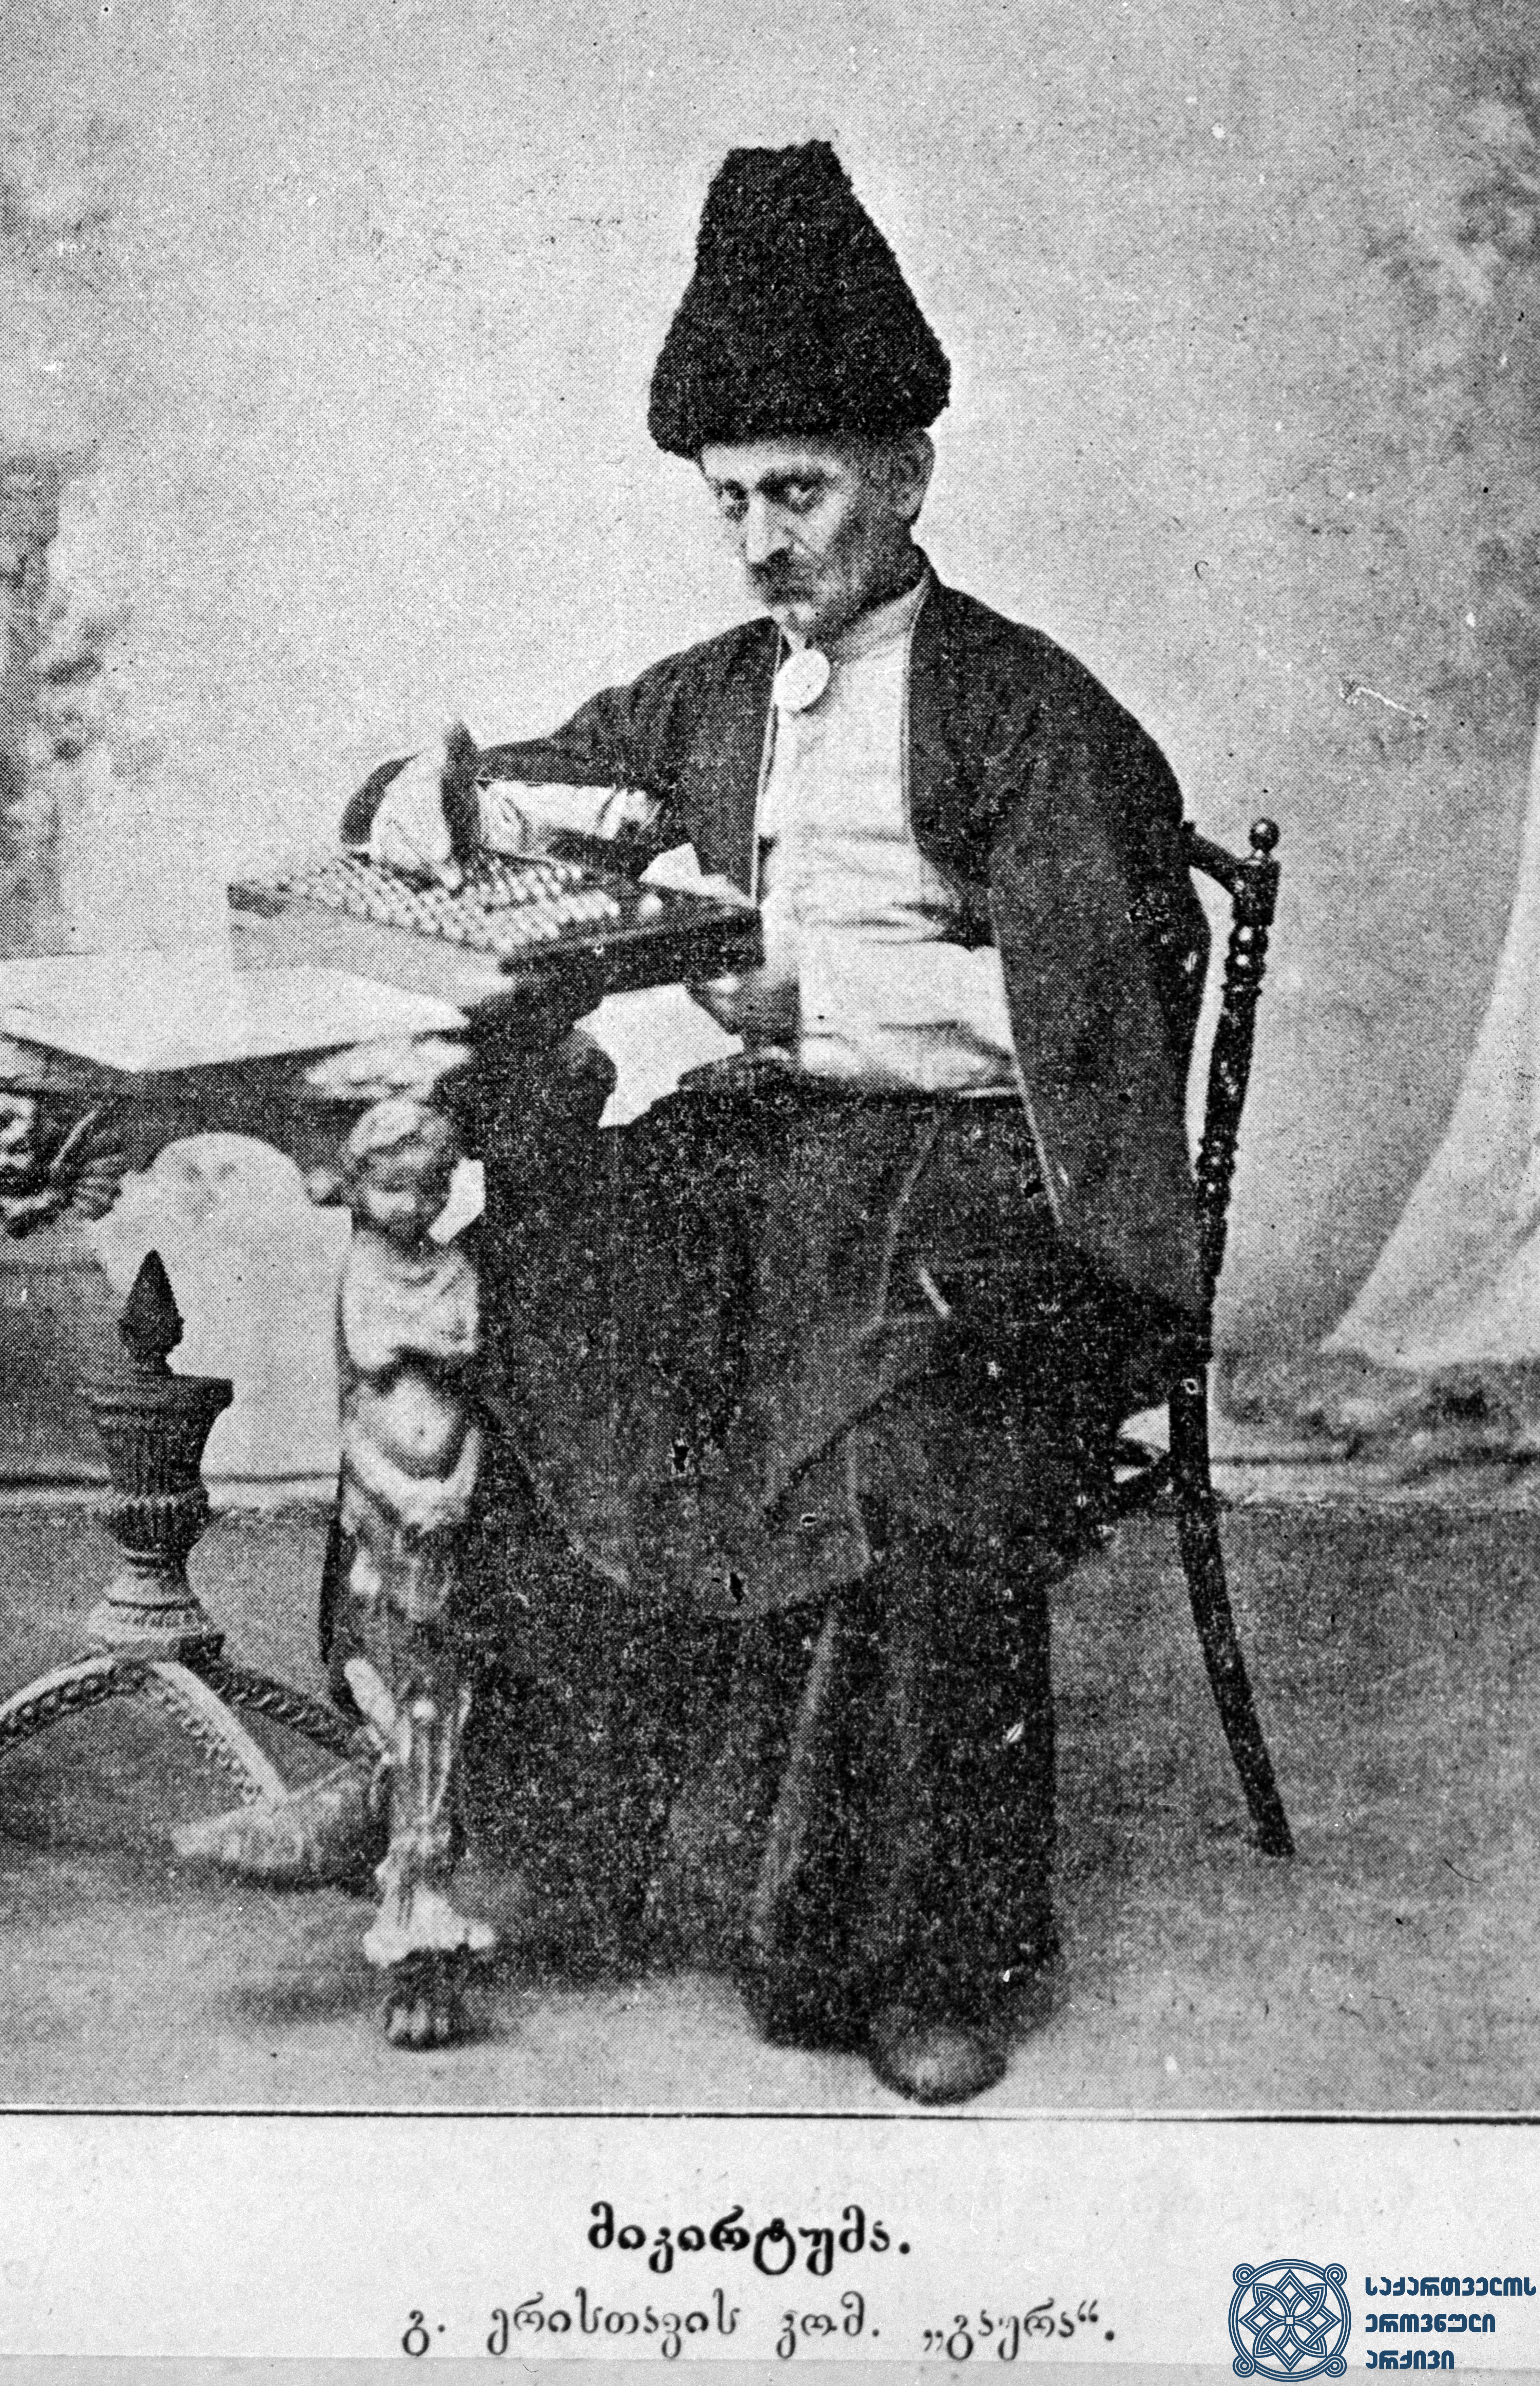 სპექტაკლი „გაყრა“. მიკირტუმა – ვასო აბაშიძე. <br>   
1902 წელი.<br>
The Performance “Gakra” (“Separation”). Vaso Abashidze as Mikirtuma.<br>
1902.